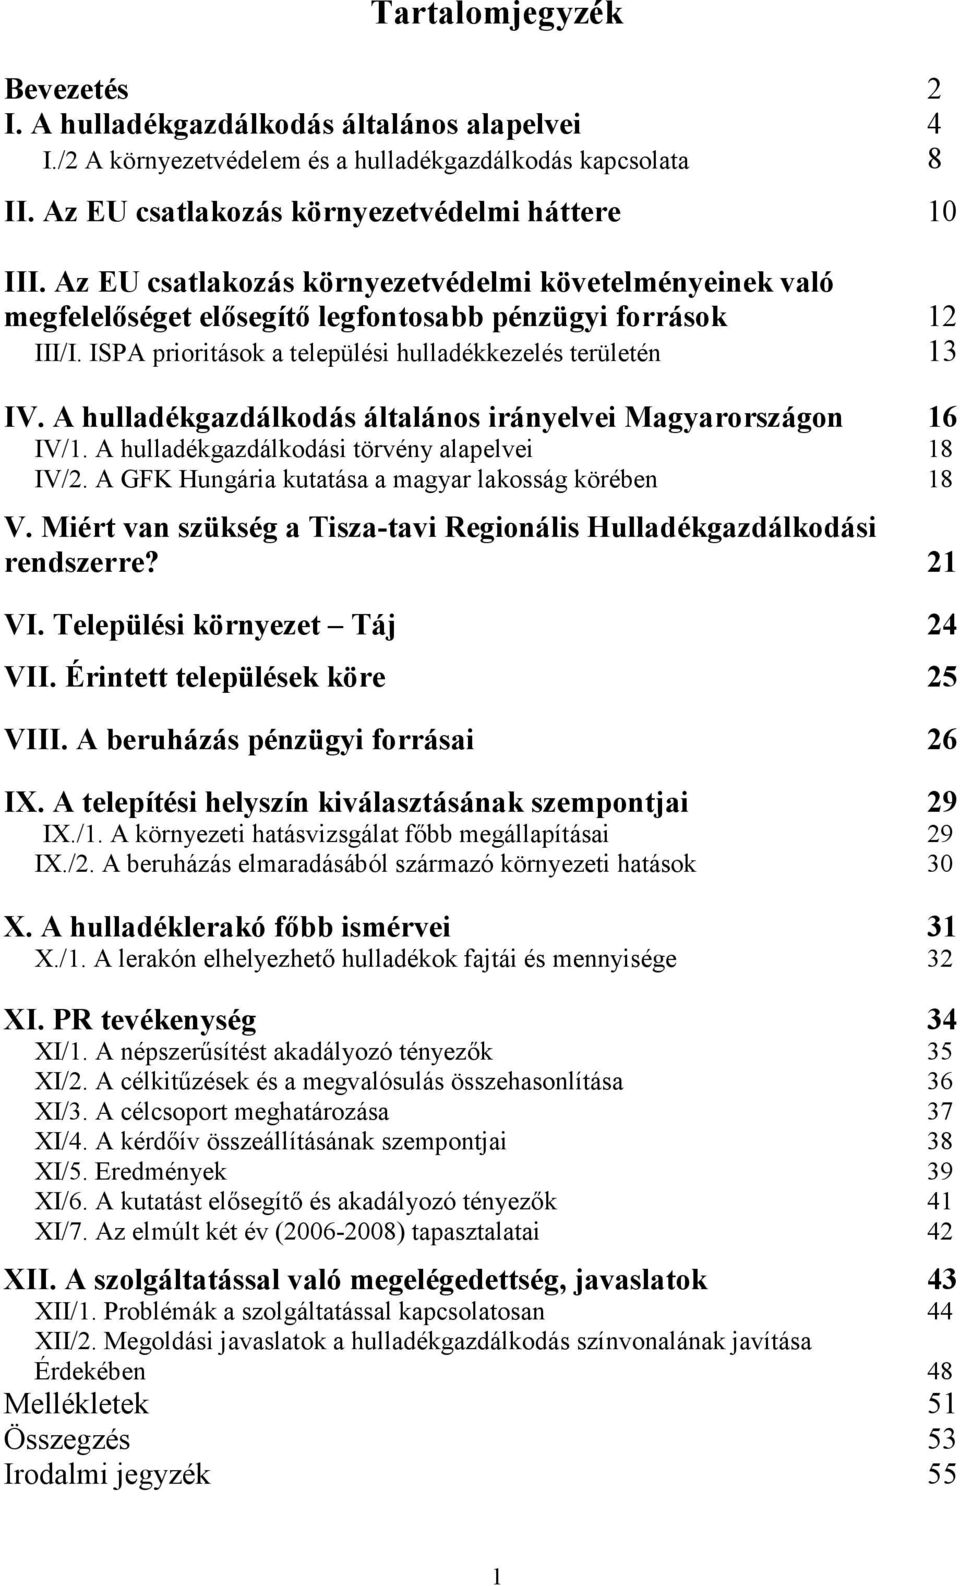 A hulladékgazdálkodás általános irányelvei Magyarországon 16 IV/1. A hulladékgazdálkodási törvény alapelvei 18 IV/2. A GFK Hungária kutatása a magyar lakosság körében 18 V.